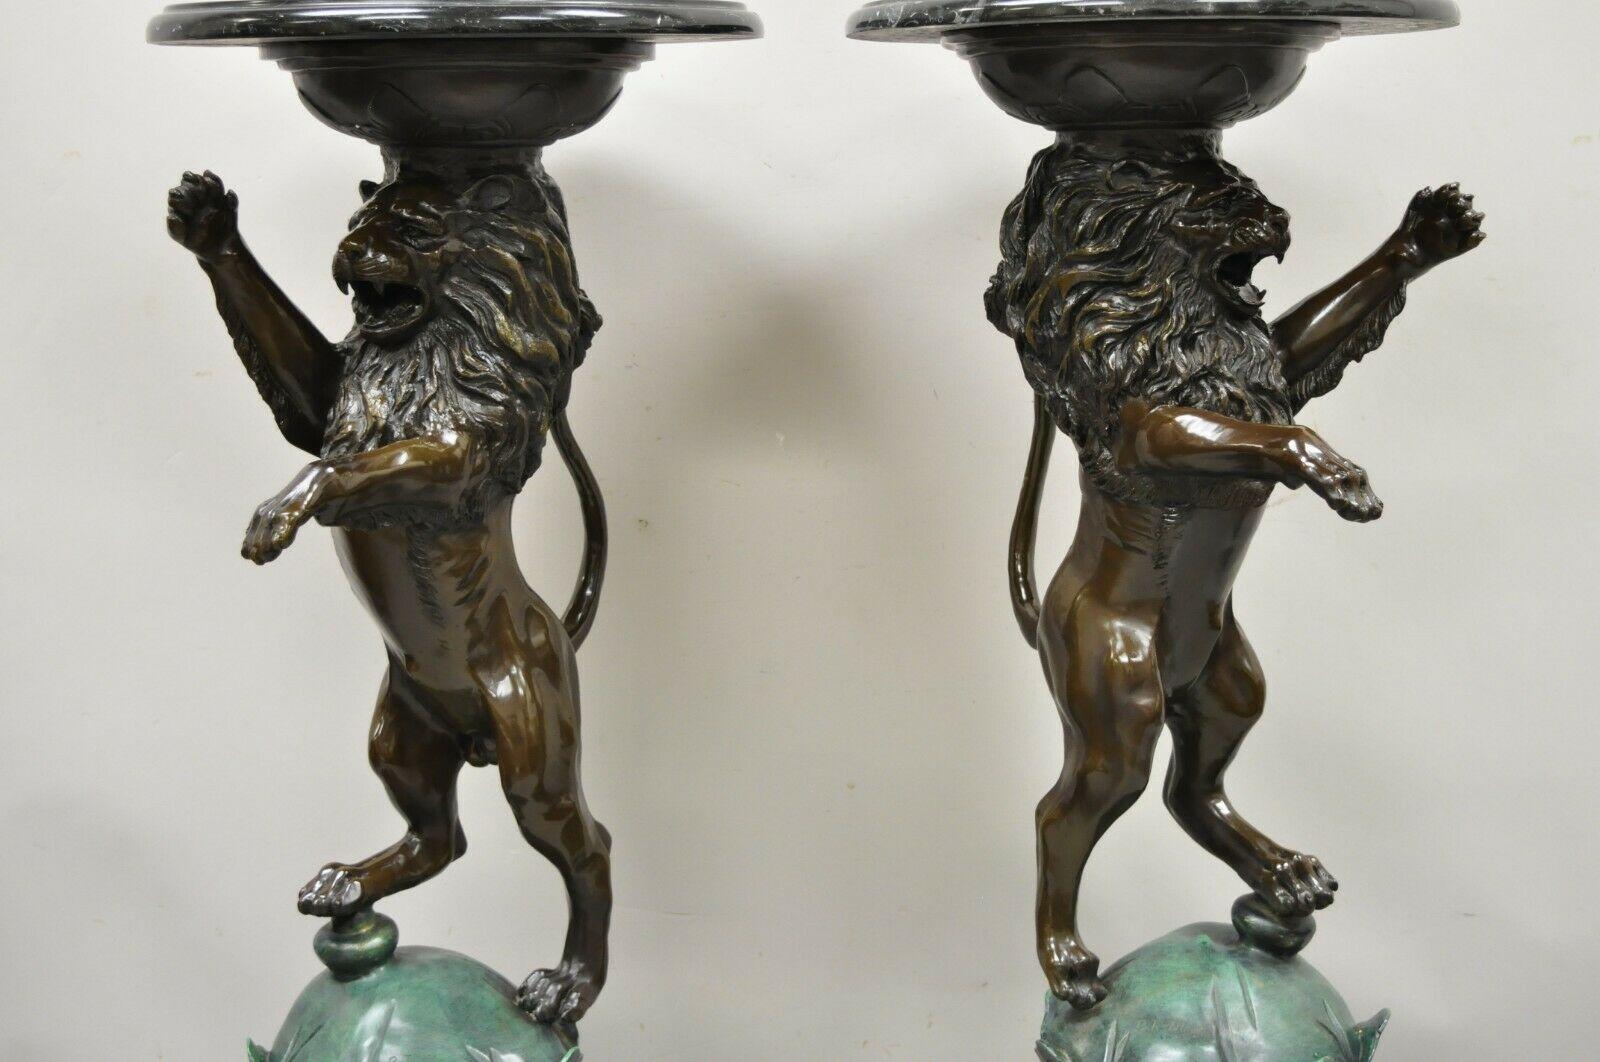 Sculpture de lion figurative en bronze coulé, socle en marbre d'après P.J. Mene - une paire. La pièce présente des formes droite et gauche, de lourdes figures de lion en bronze moulé, des plateaux ronds en marbre noir, signés 